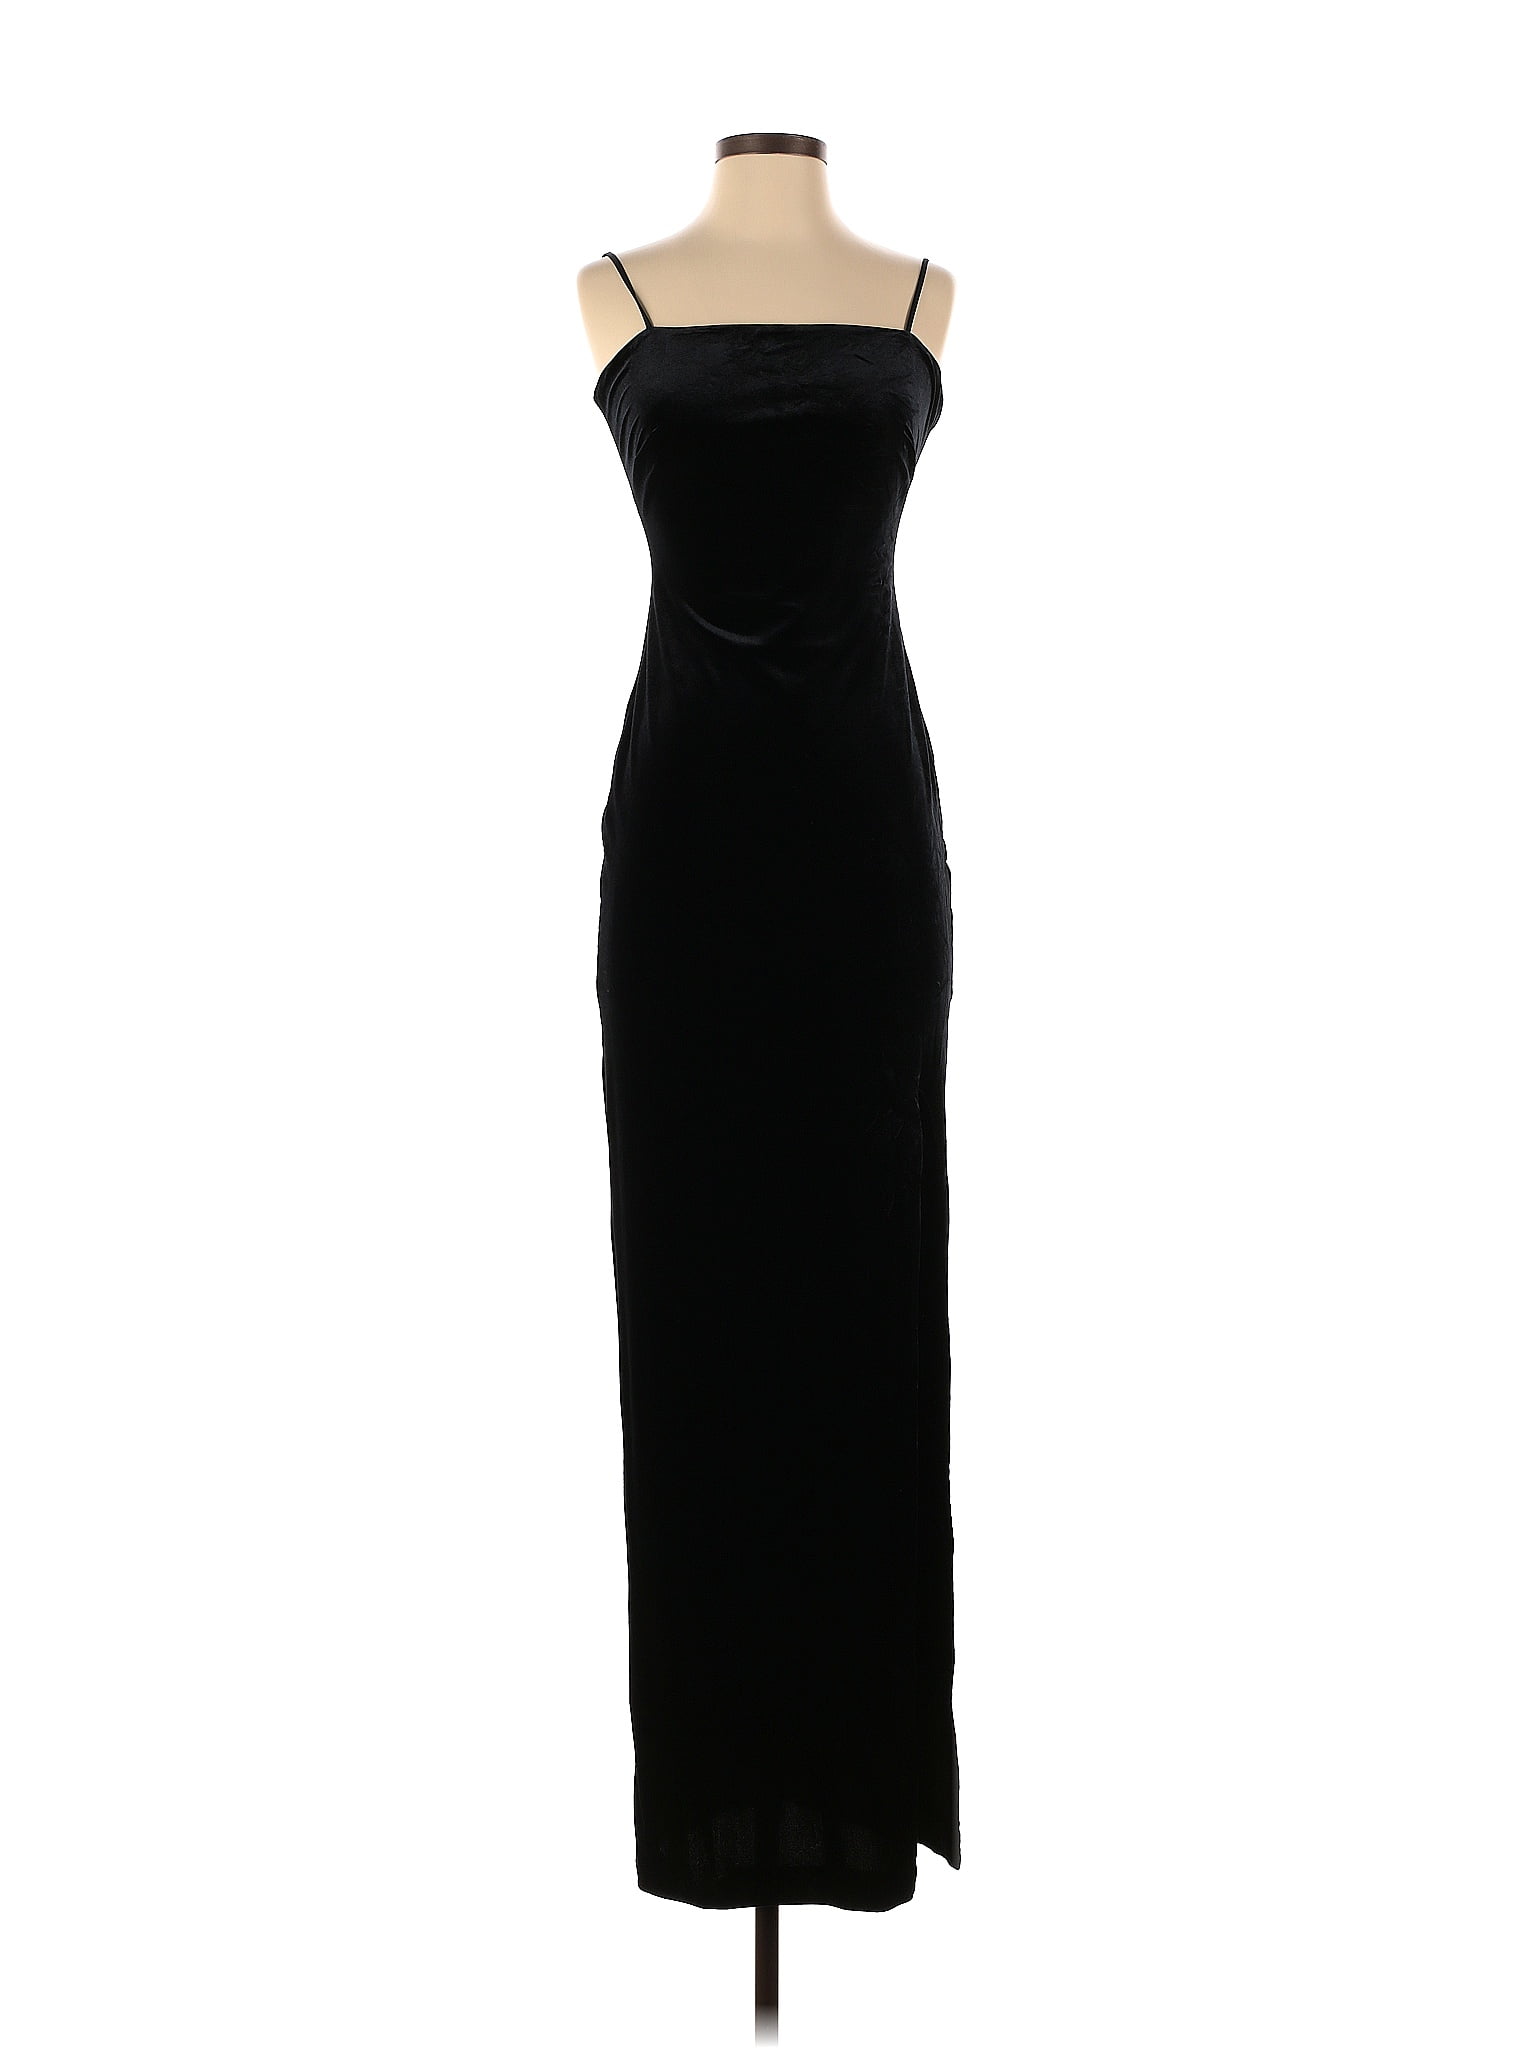 Nicole Miller Solid Black Velvet Scoop Back Gown Size 0 - 81% off | ThredUp